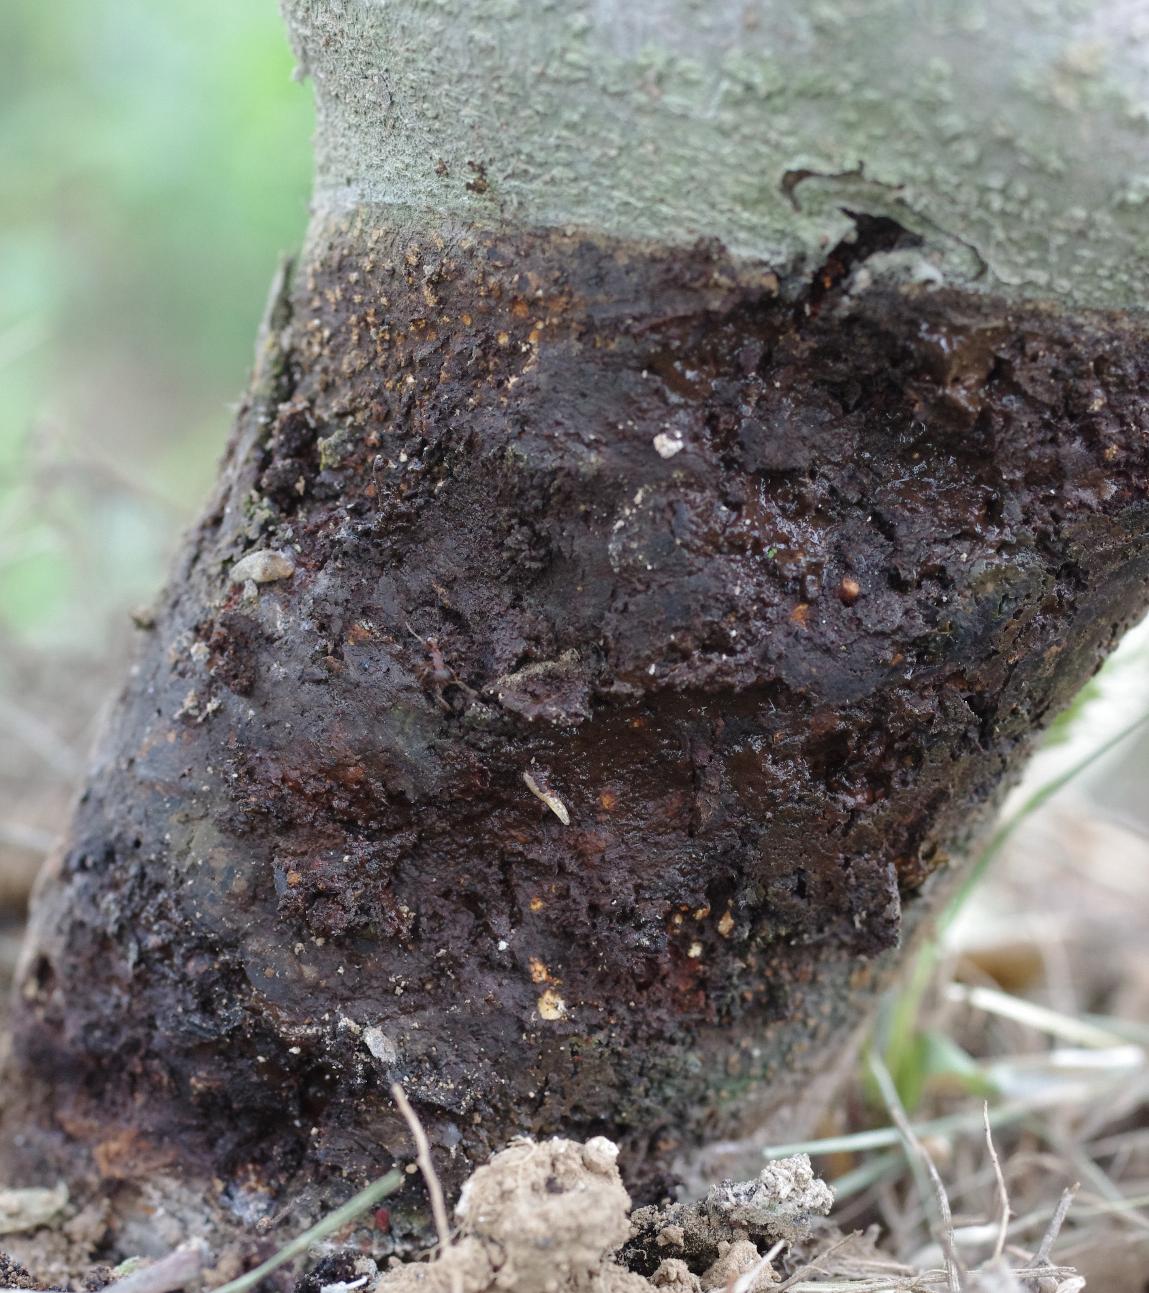 Dogwood borer damage to trunk (Strang, UKY)